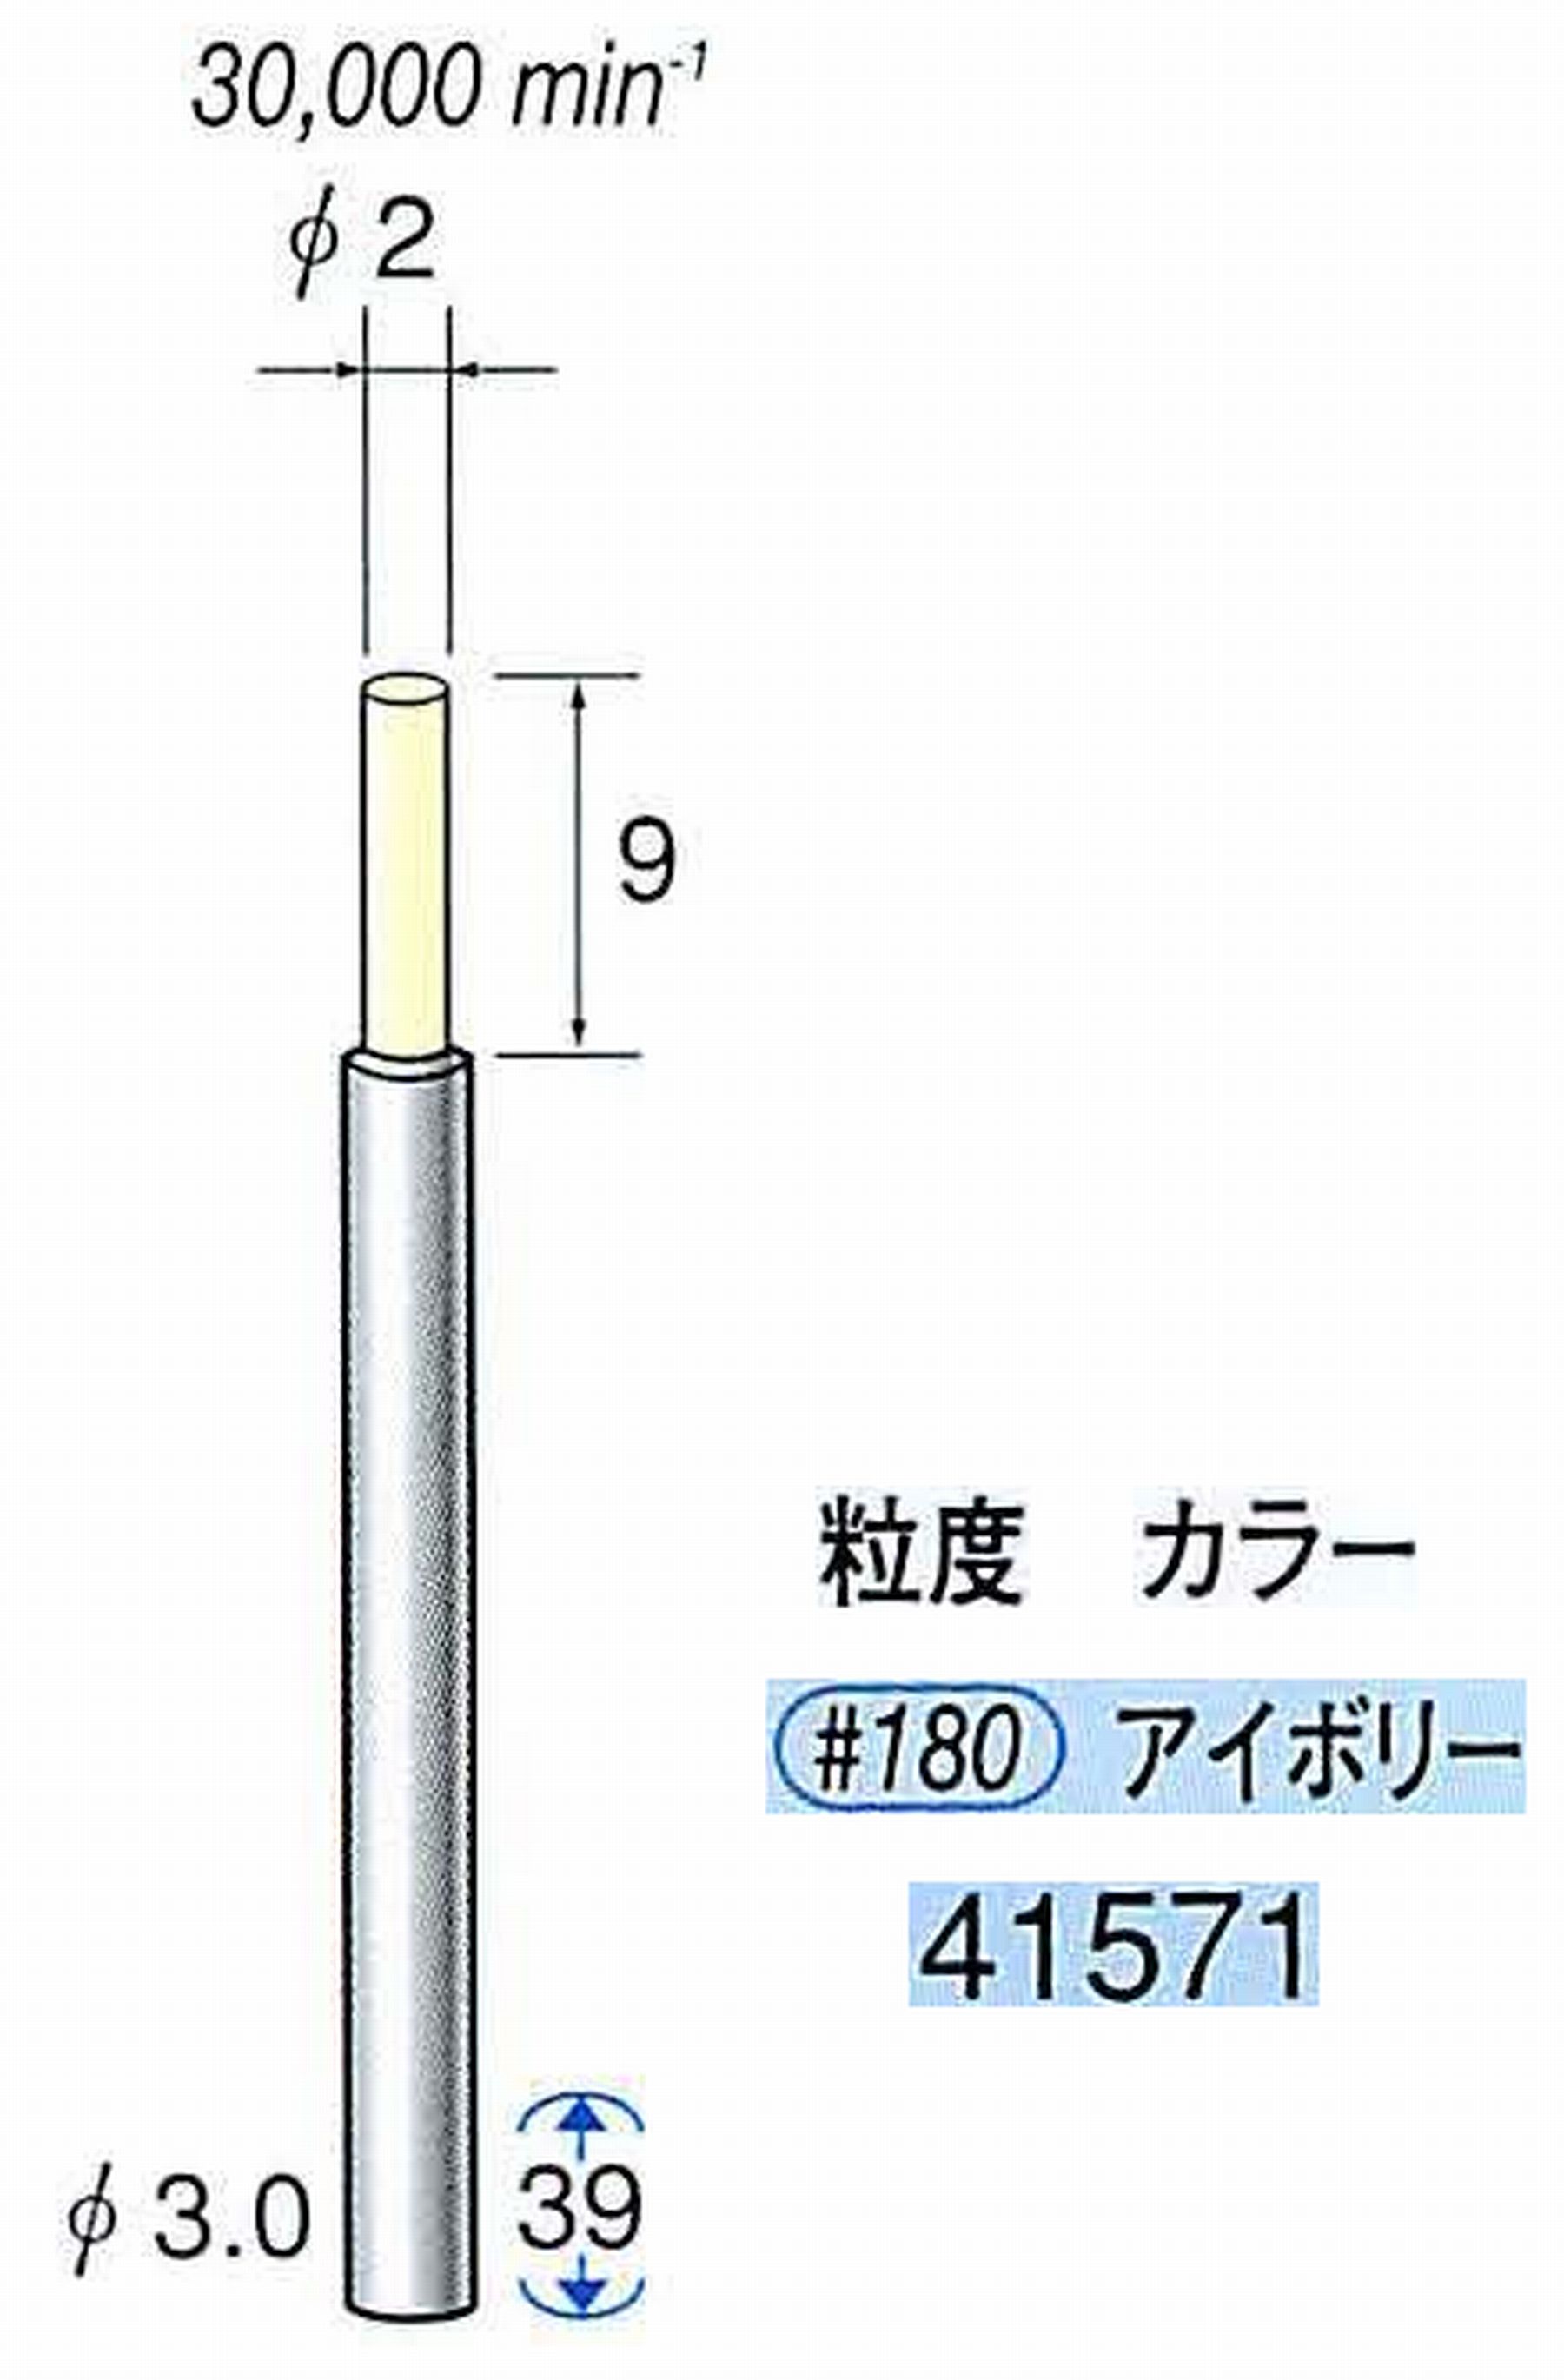 ナカニシ/NAKANISHI セラファイバー精密軸付砥石(カラー アイボリー) 軸径(シャンク) φ3.0mm 41571